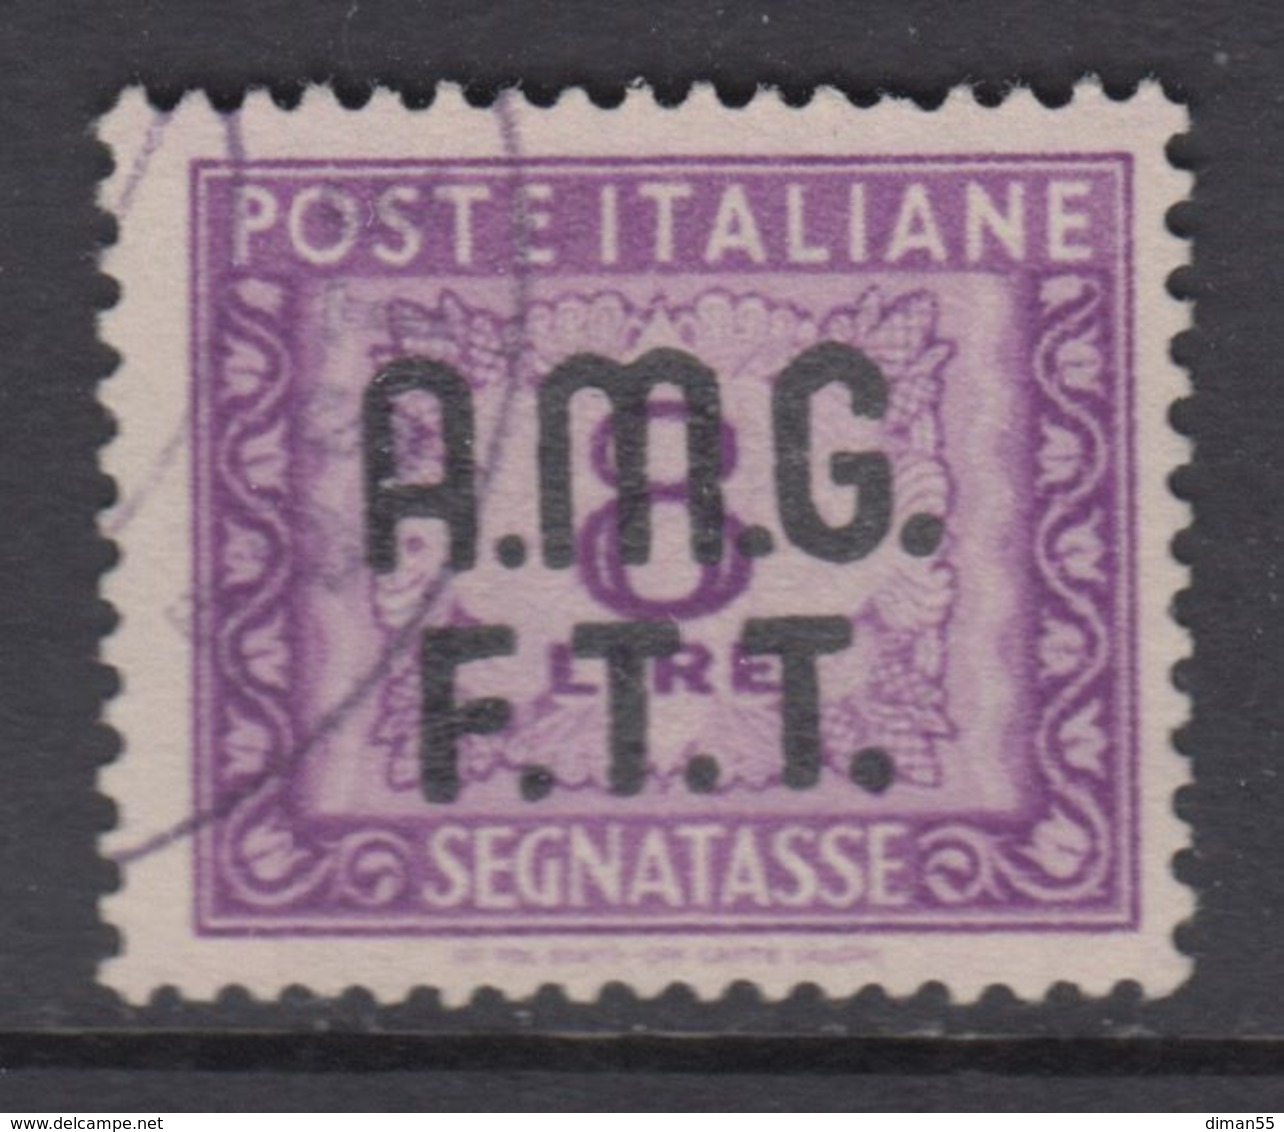 Trieste Zona A - AMG-FTT - Segnatasse N.11 - Cat. 350 Euro  - Usato - Luxus Postfrisch - Postage Due